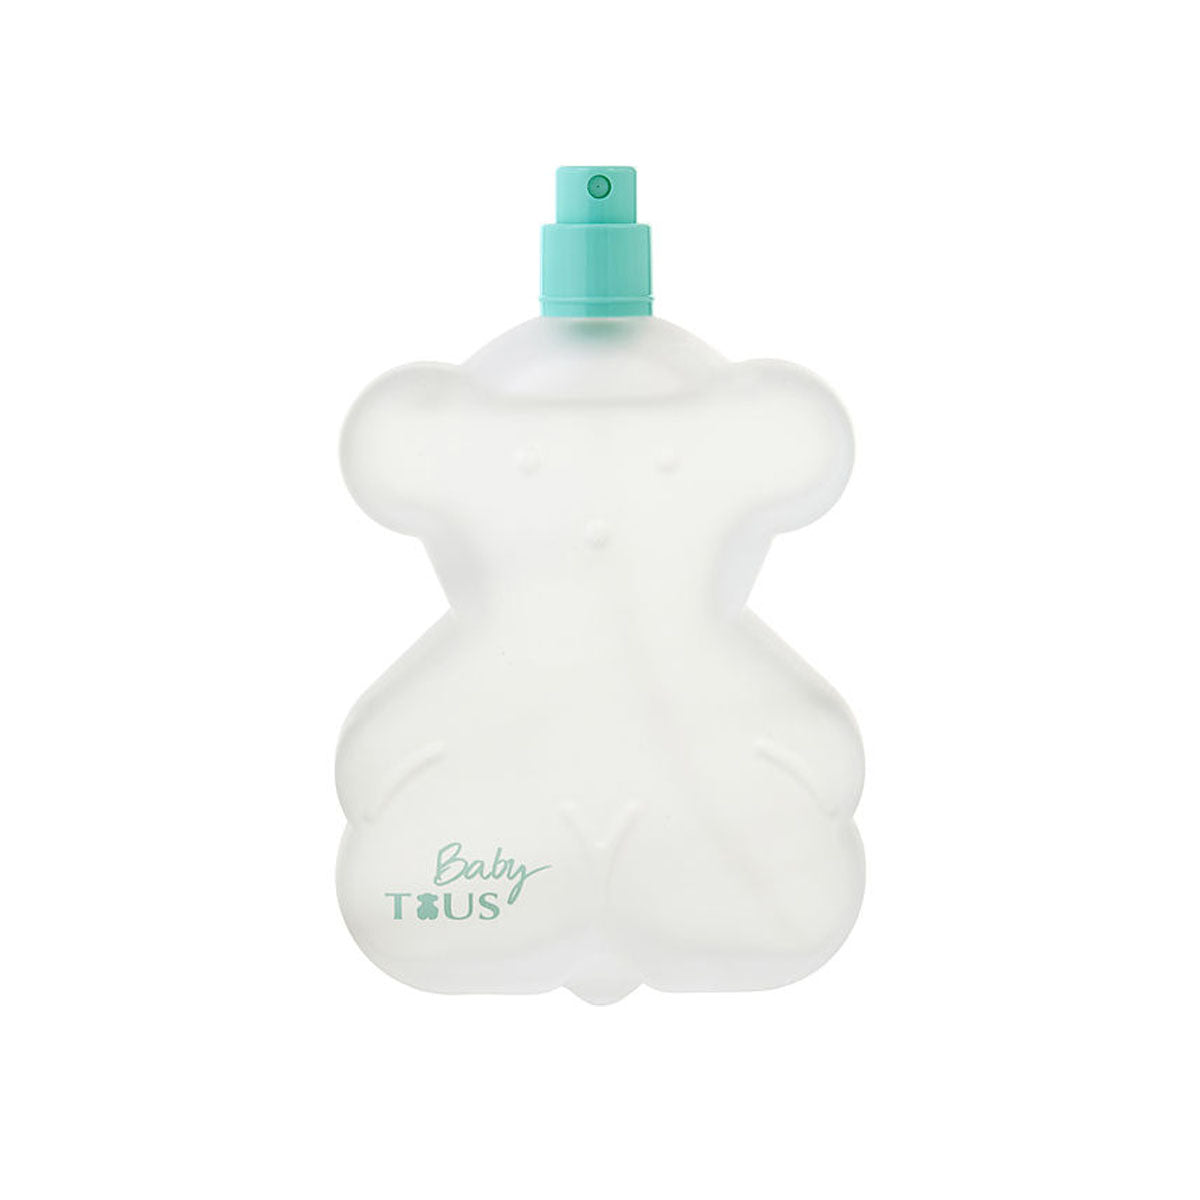 Tous Baby 100 ml EDC TESTER – Perfumería Fraganzza